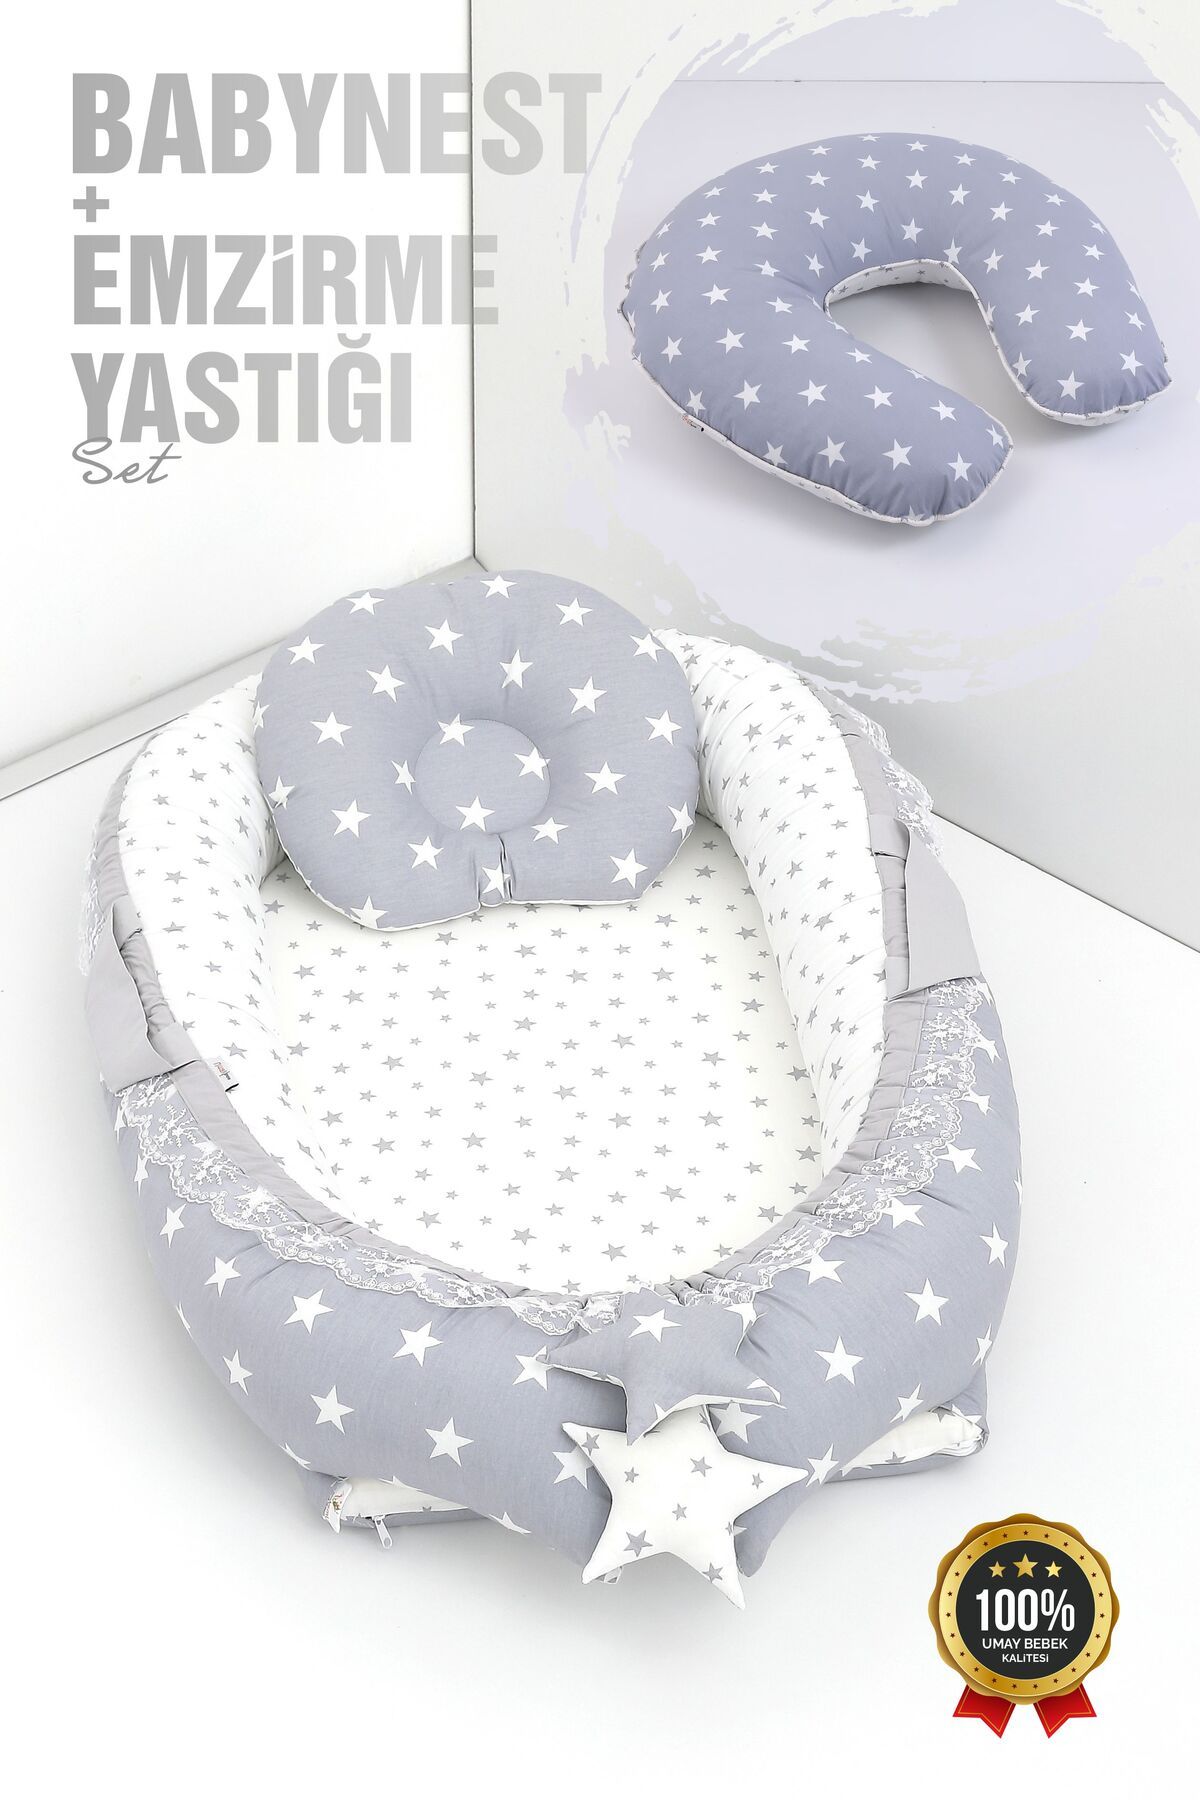 Umaybebek Babynest Bebek Uyku Yatağı 0-2 Yaş + Emzirme Yastığı 60x60 cm